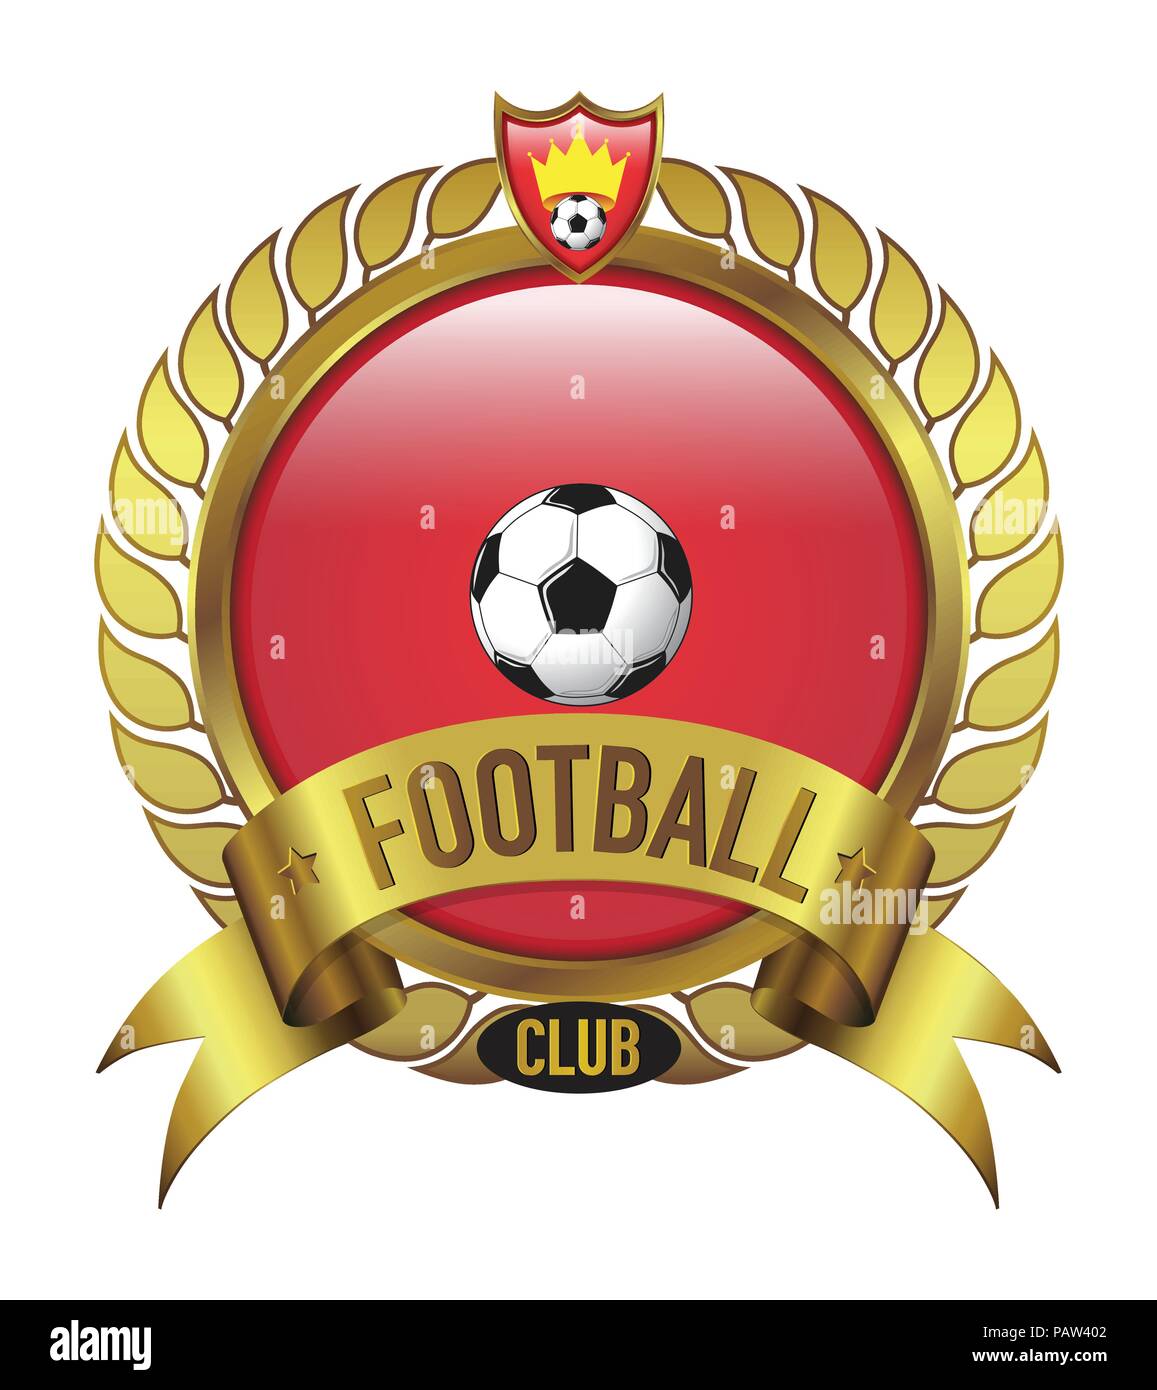 Football Team Logos